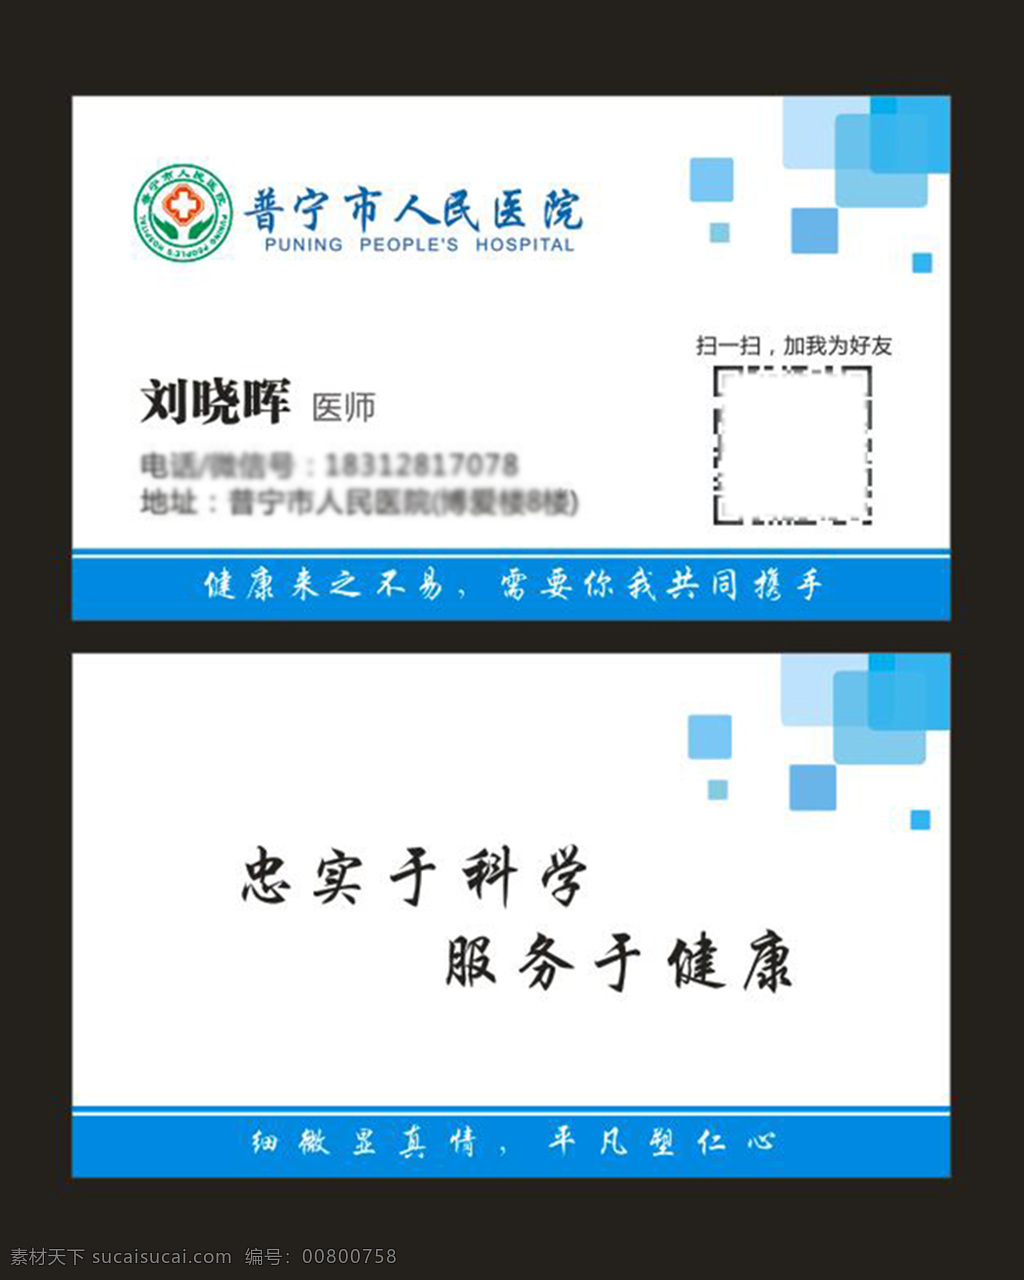 普宁市 人民 医院 刘晓晖 名片 骨科 医院名片 烫伤 烧伤 名片设计 名片广告 矢量 白色